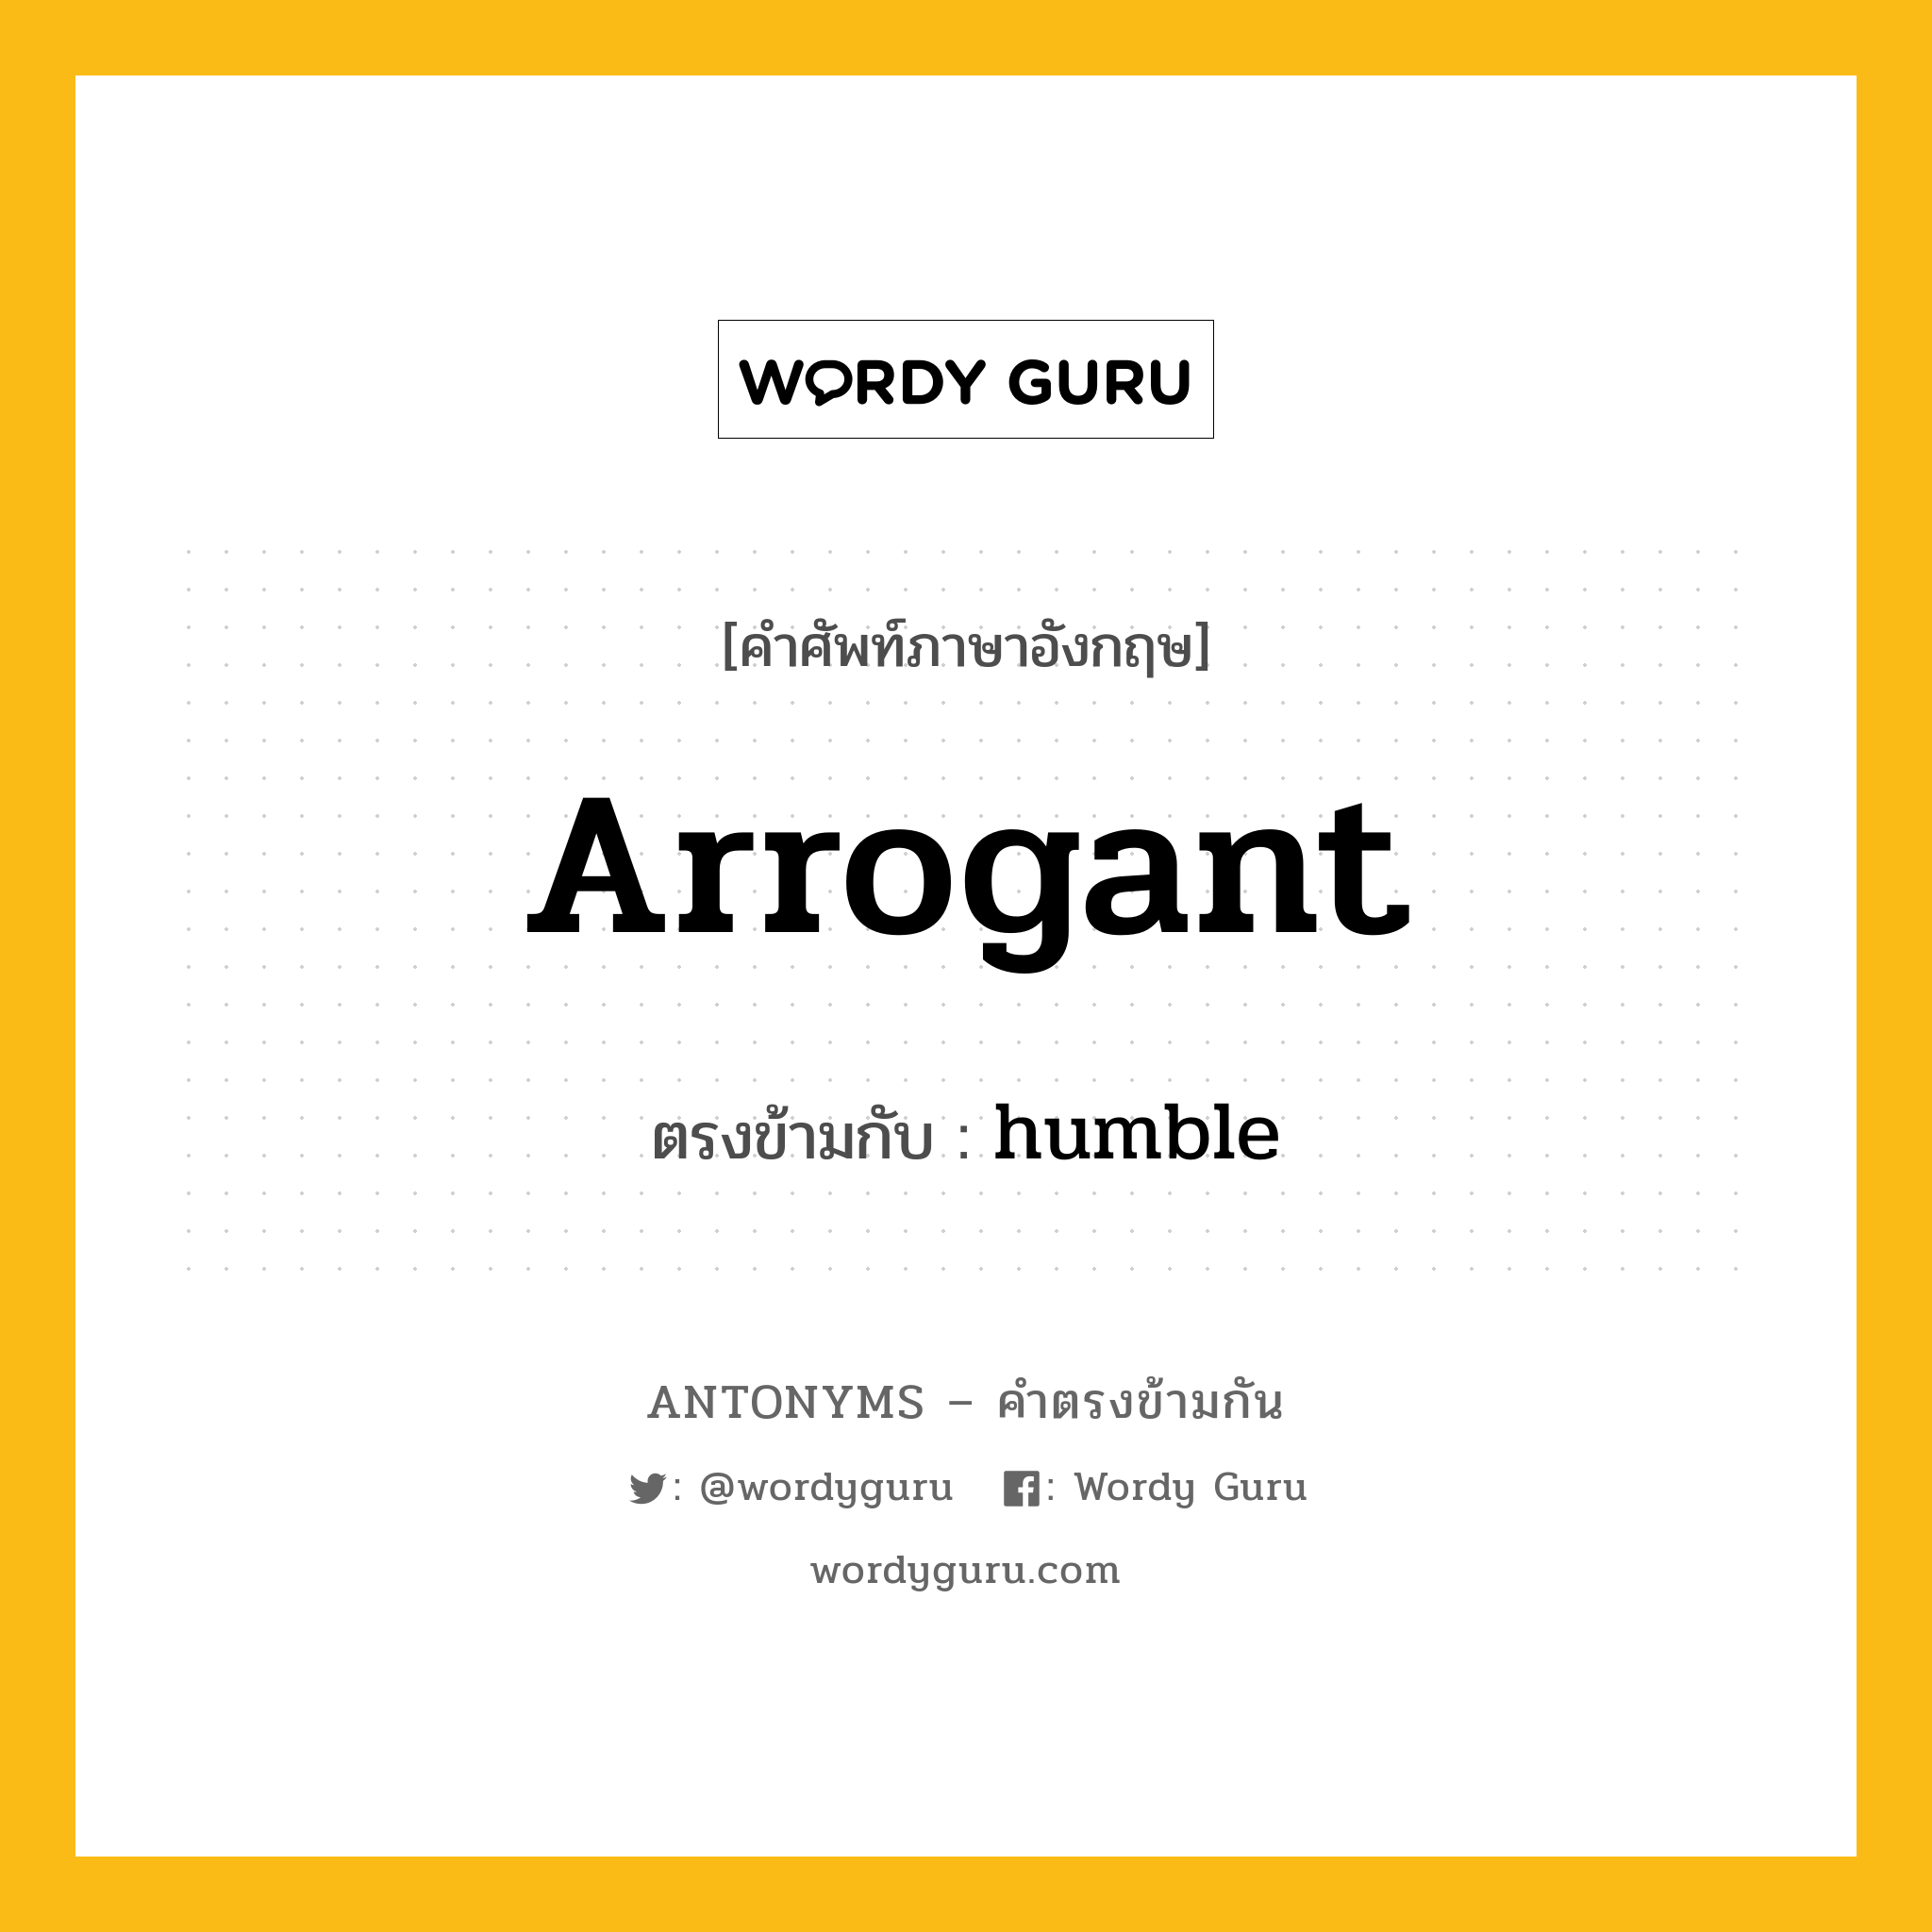 arrogant เป็นคำตรงข้ามกับคำไหนบ้าง?, คำศัพท์ภาษาอังกฤษ arrogant ตรงข้ามกับ humble หมวด humble